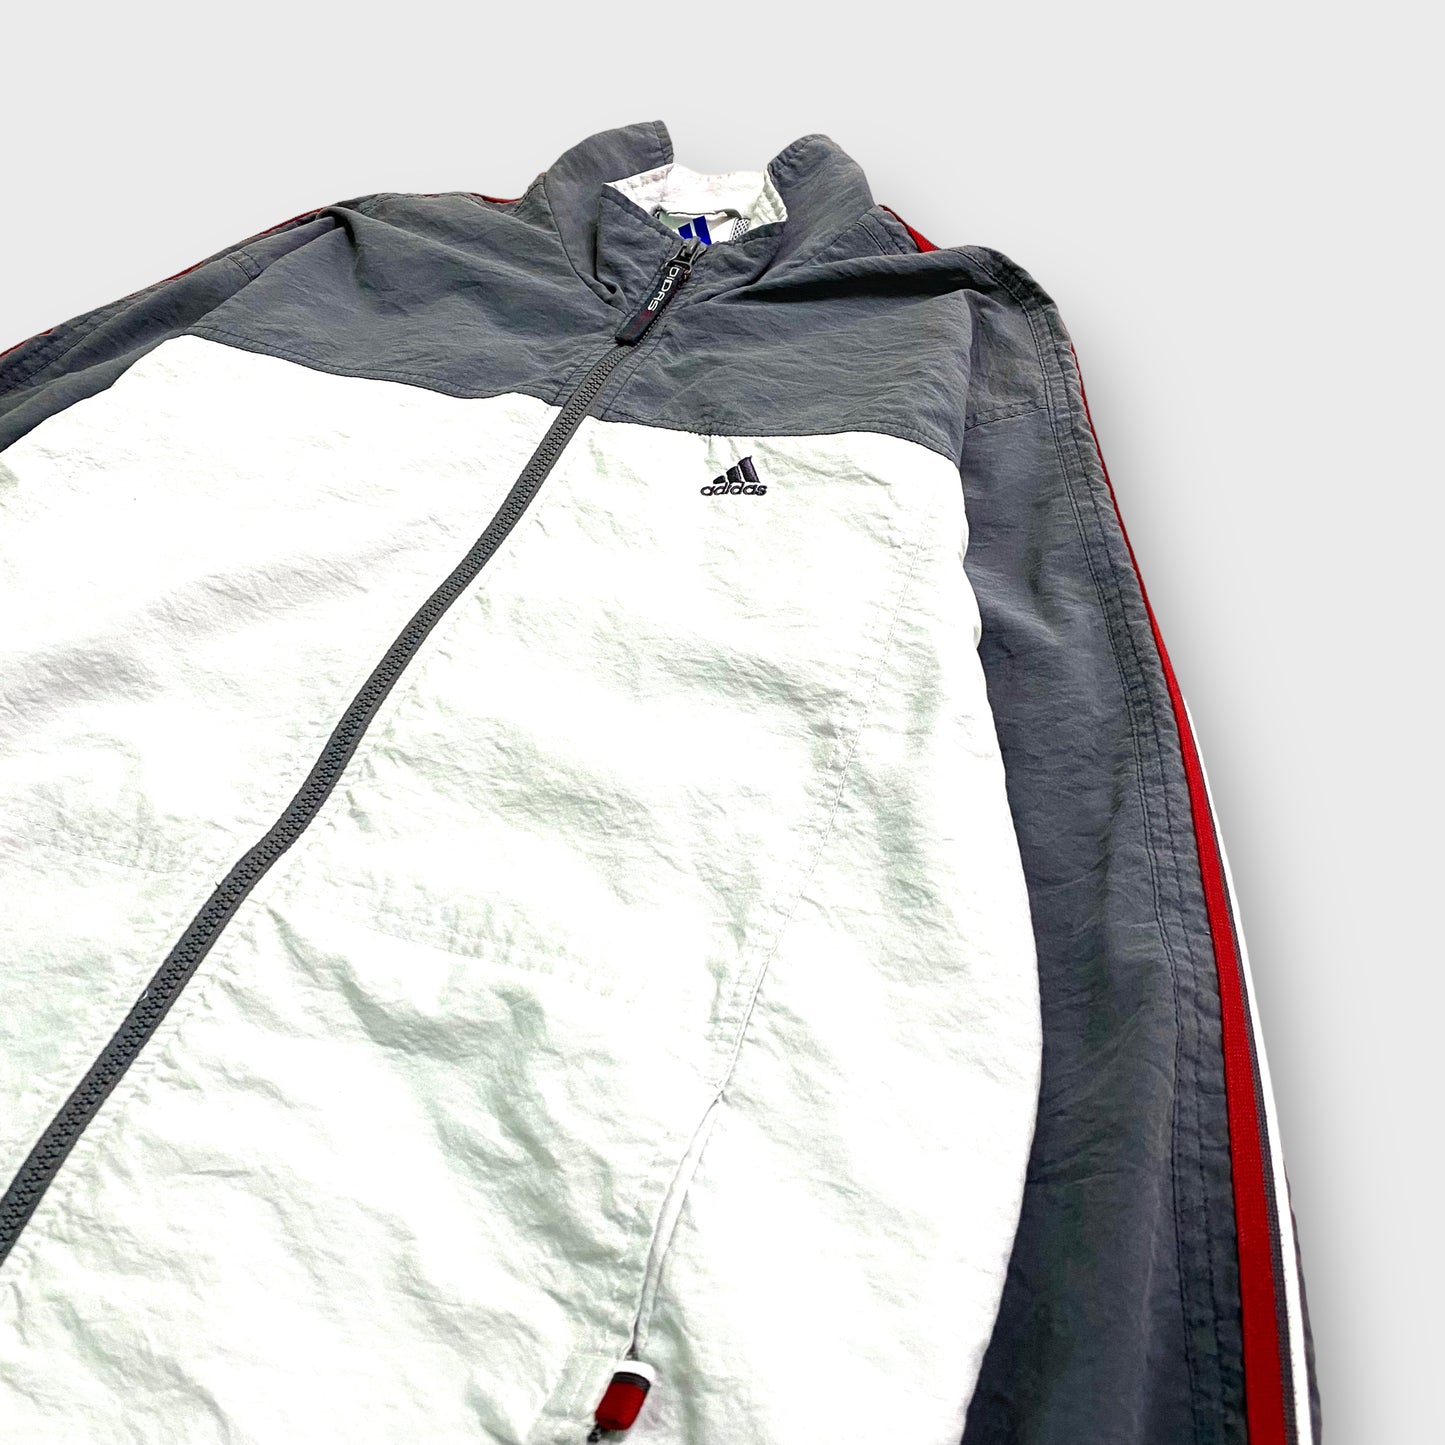 90's "adidas" Nylon jacket